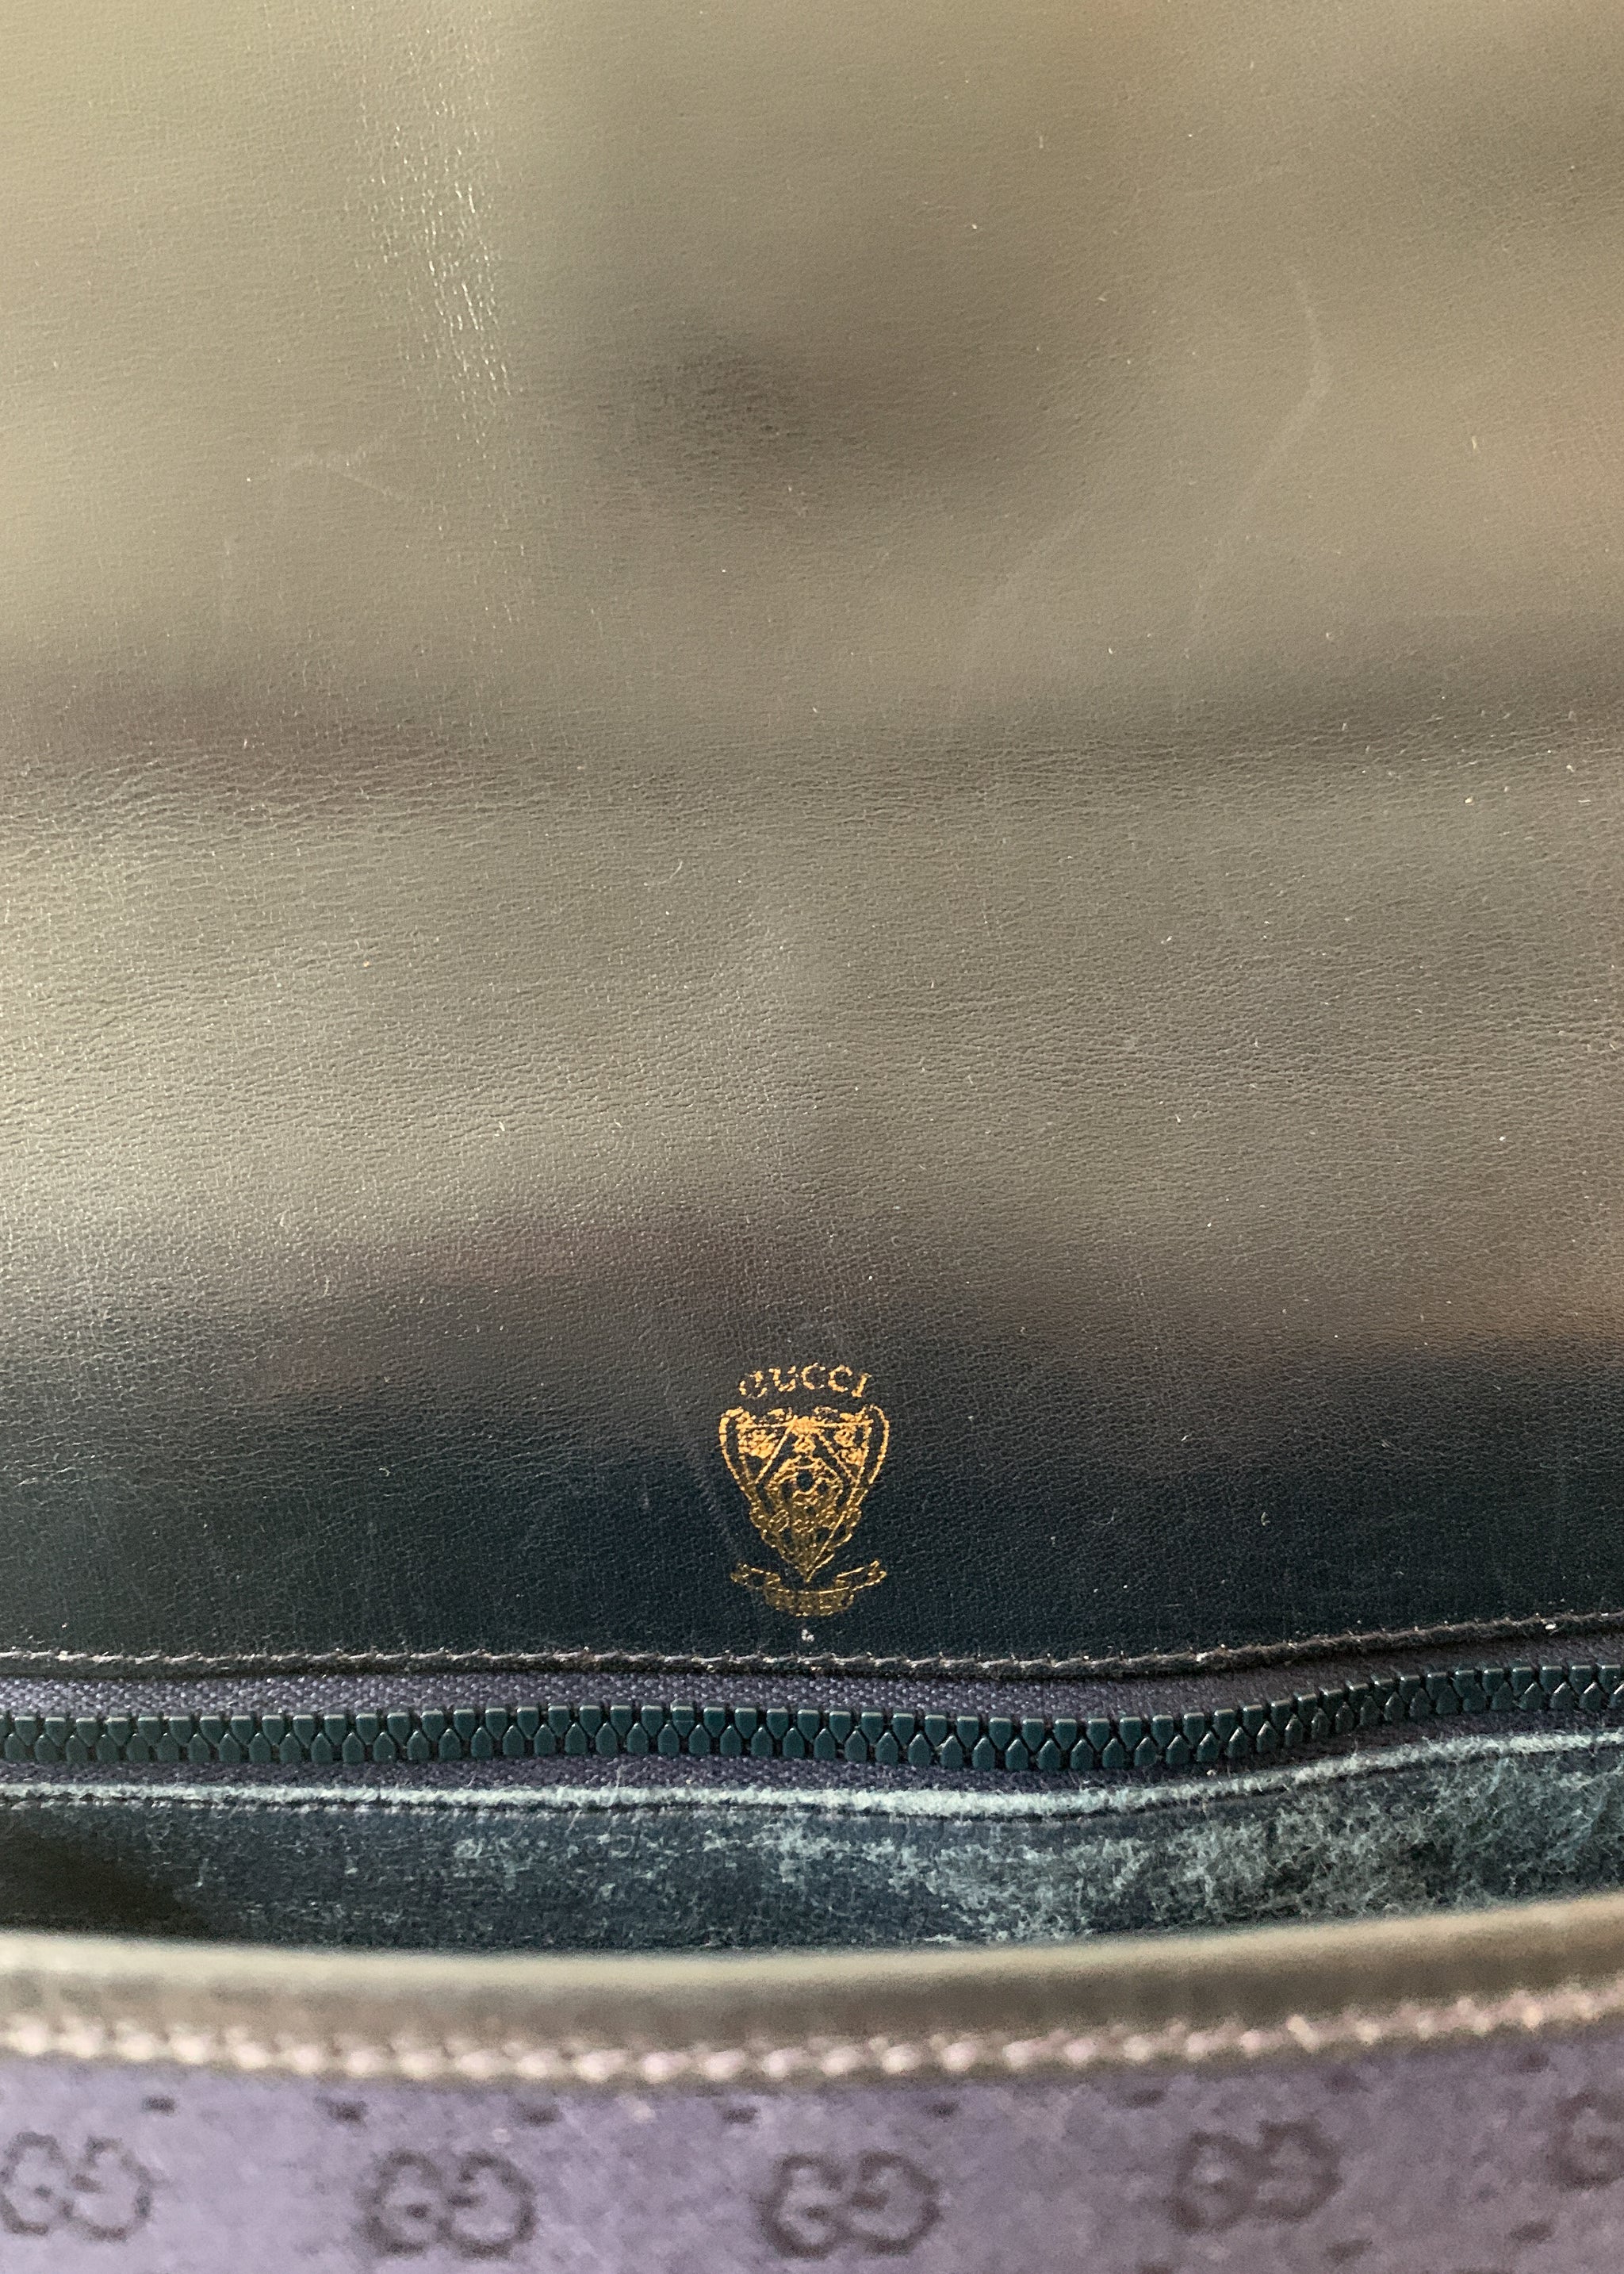 GUCCI Vintage Navy Blue Monogrammed Shoulder Bag. Italian 